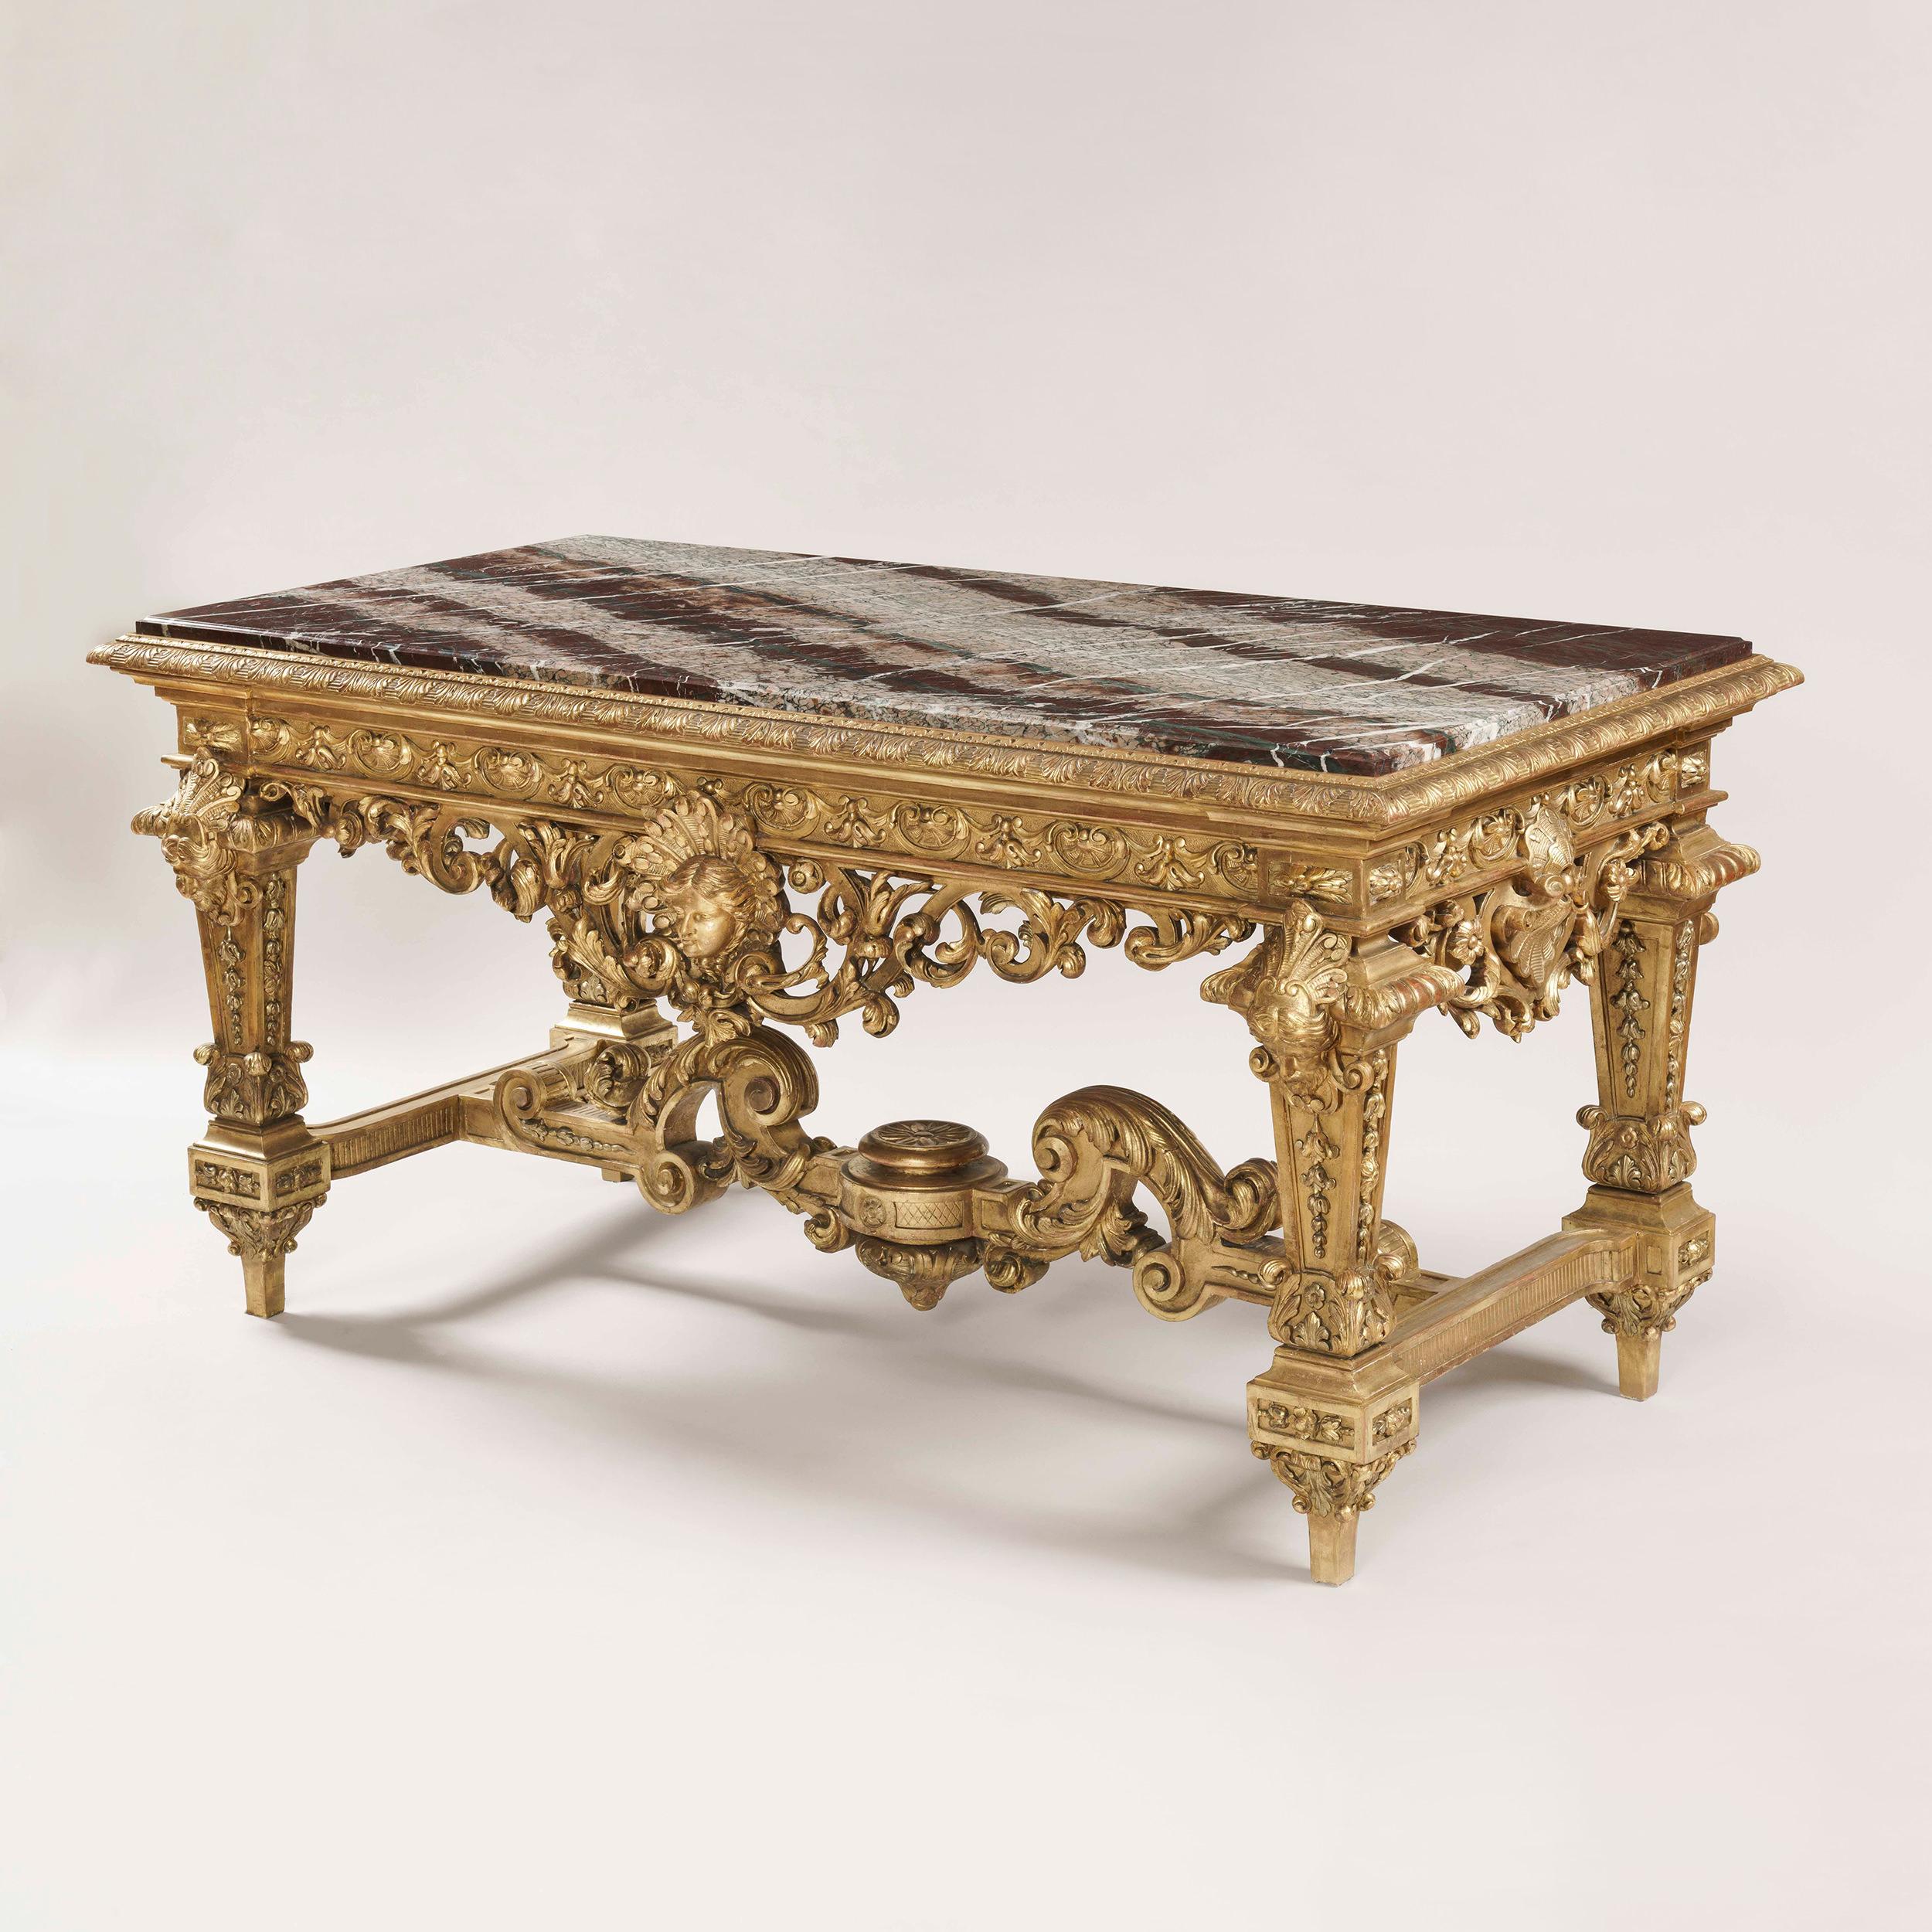 Ein außergewöhnlicher Tisch aus vergoldetem Holz de Milieu
im Stil von Ludwig XIV.

Ein wahres Vergnügen des Schnitzers, der vergoldete Mitteltisch von rechteckiger Form, der auf vier balusterförmigen Beinen steht, die durch eine Bahre verbunden